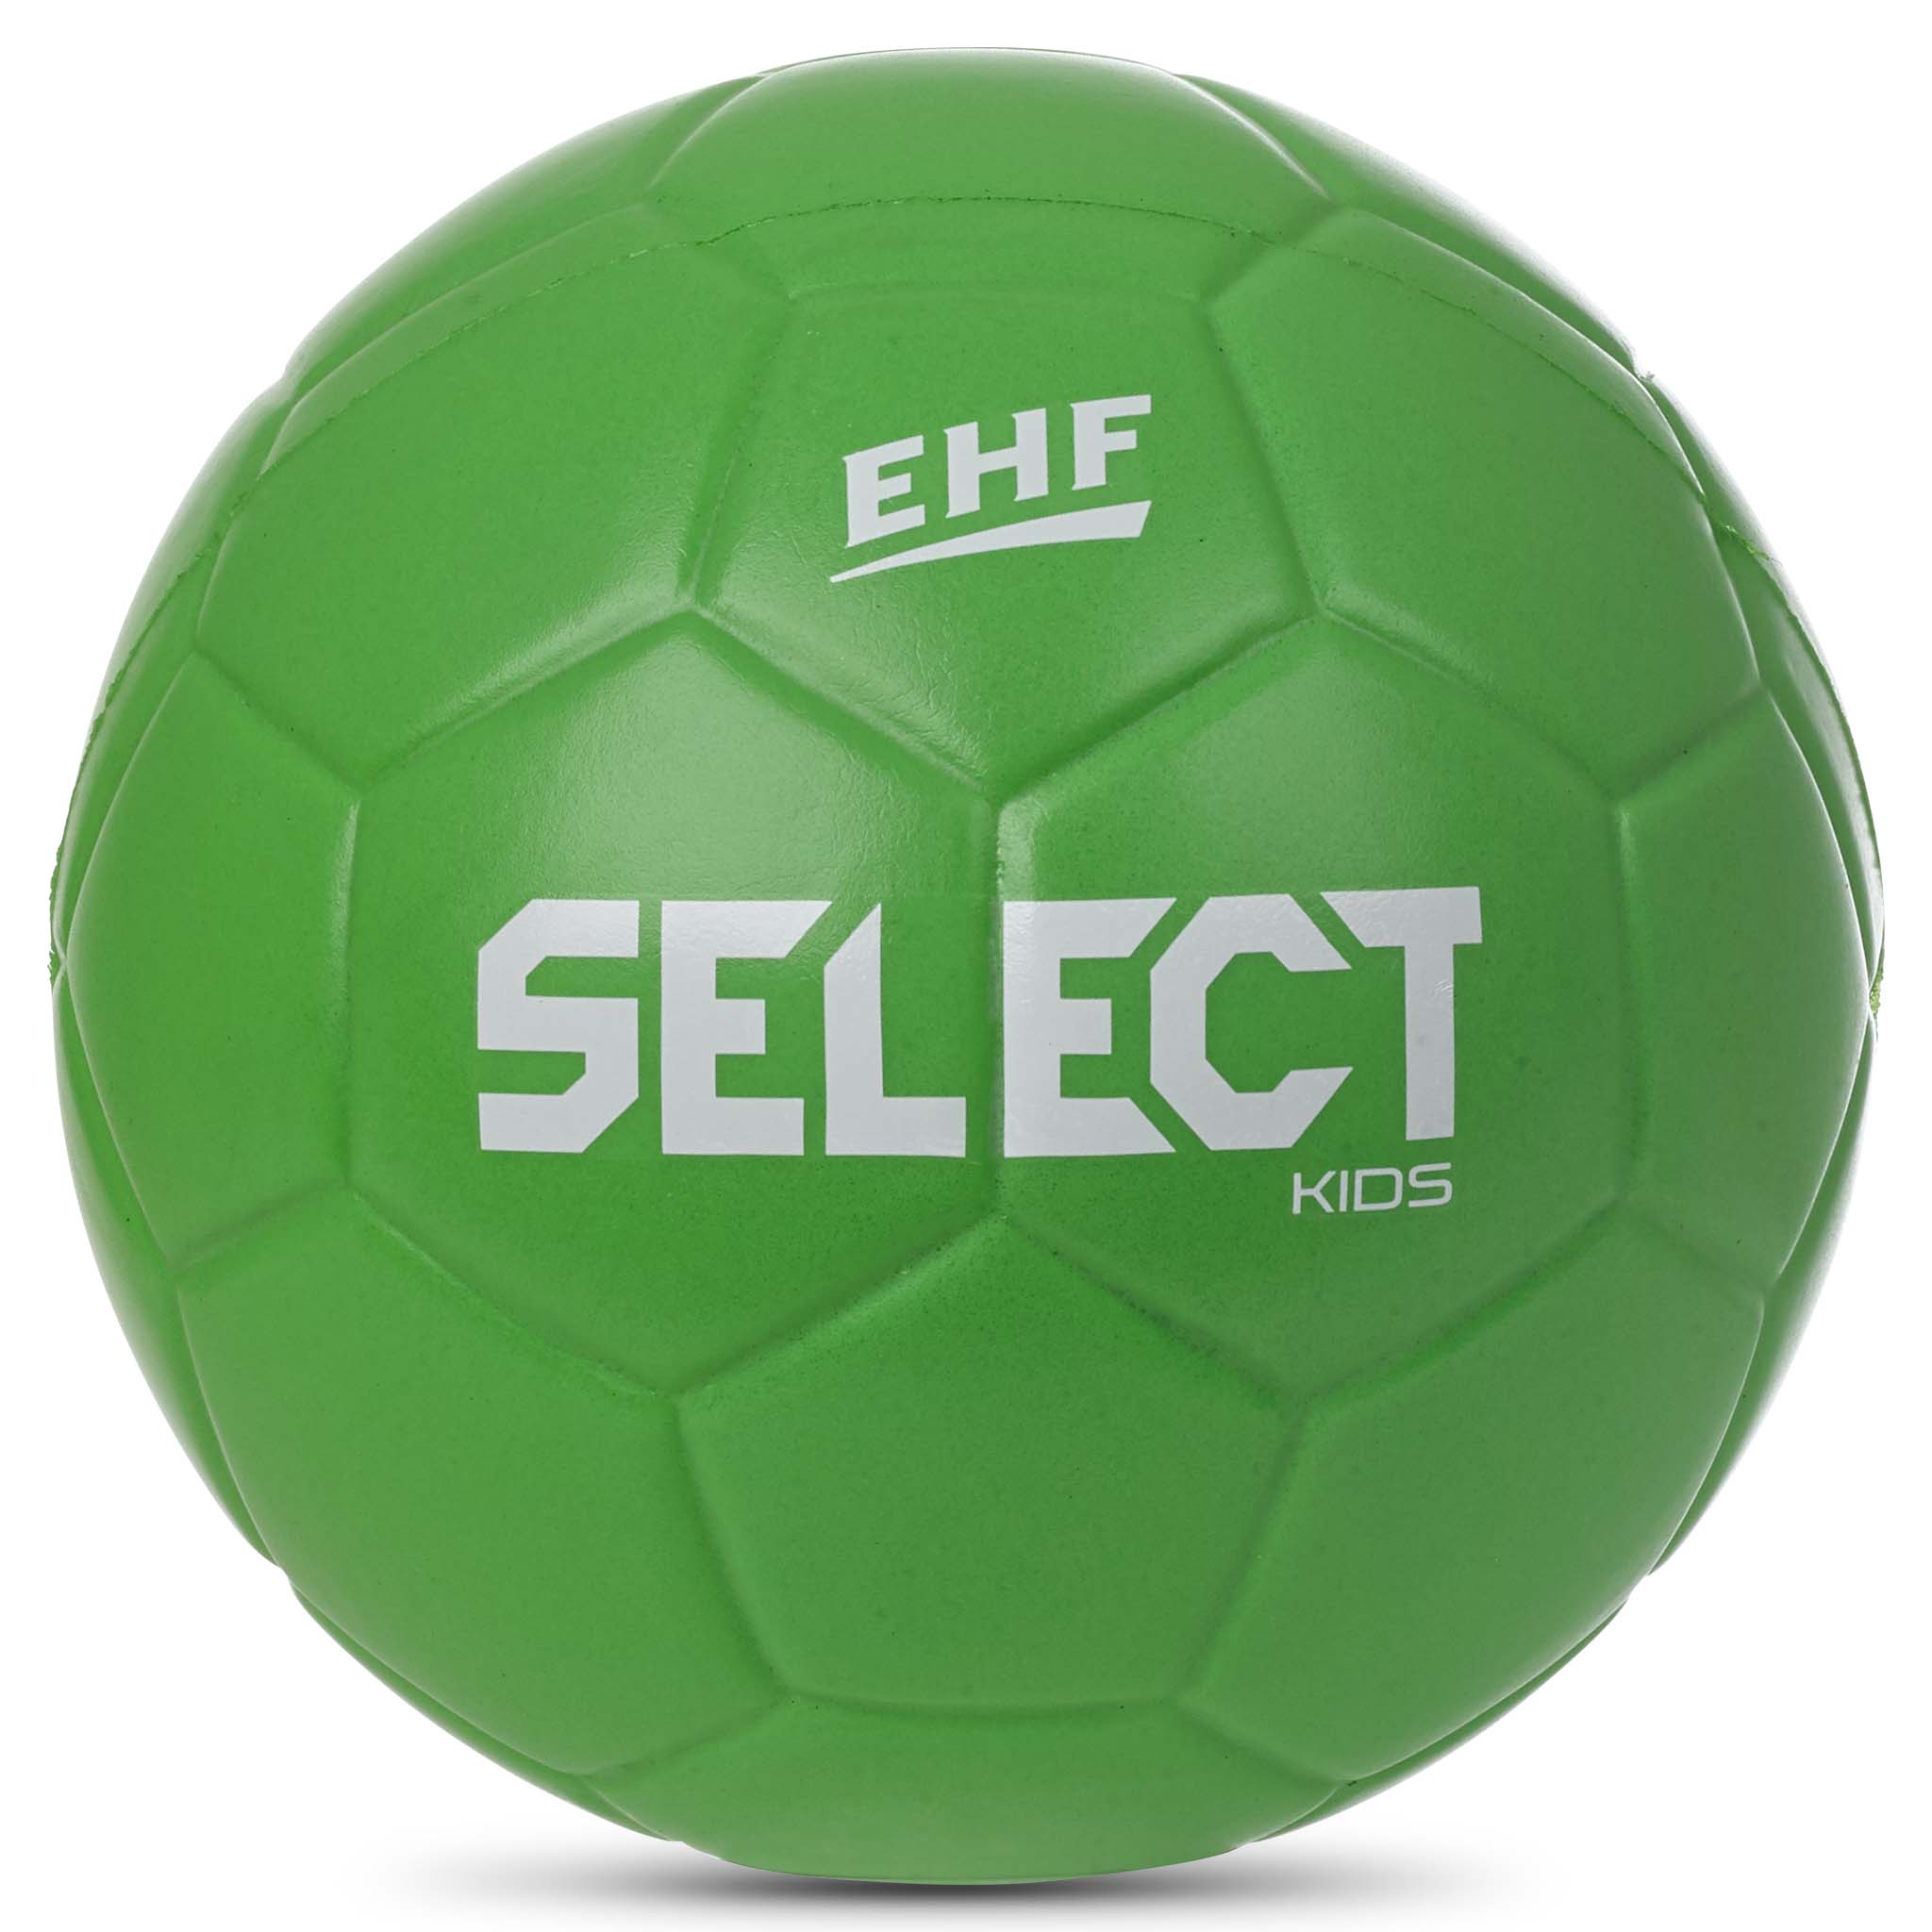 Ballon enfant Select Goalcha Street Handball - Select - Marques